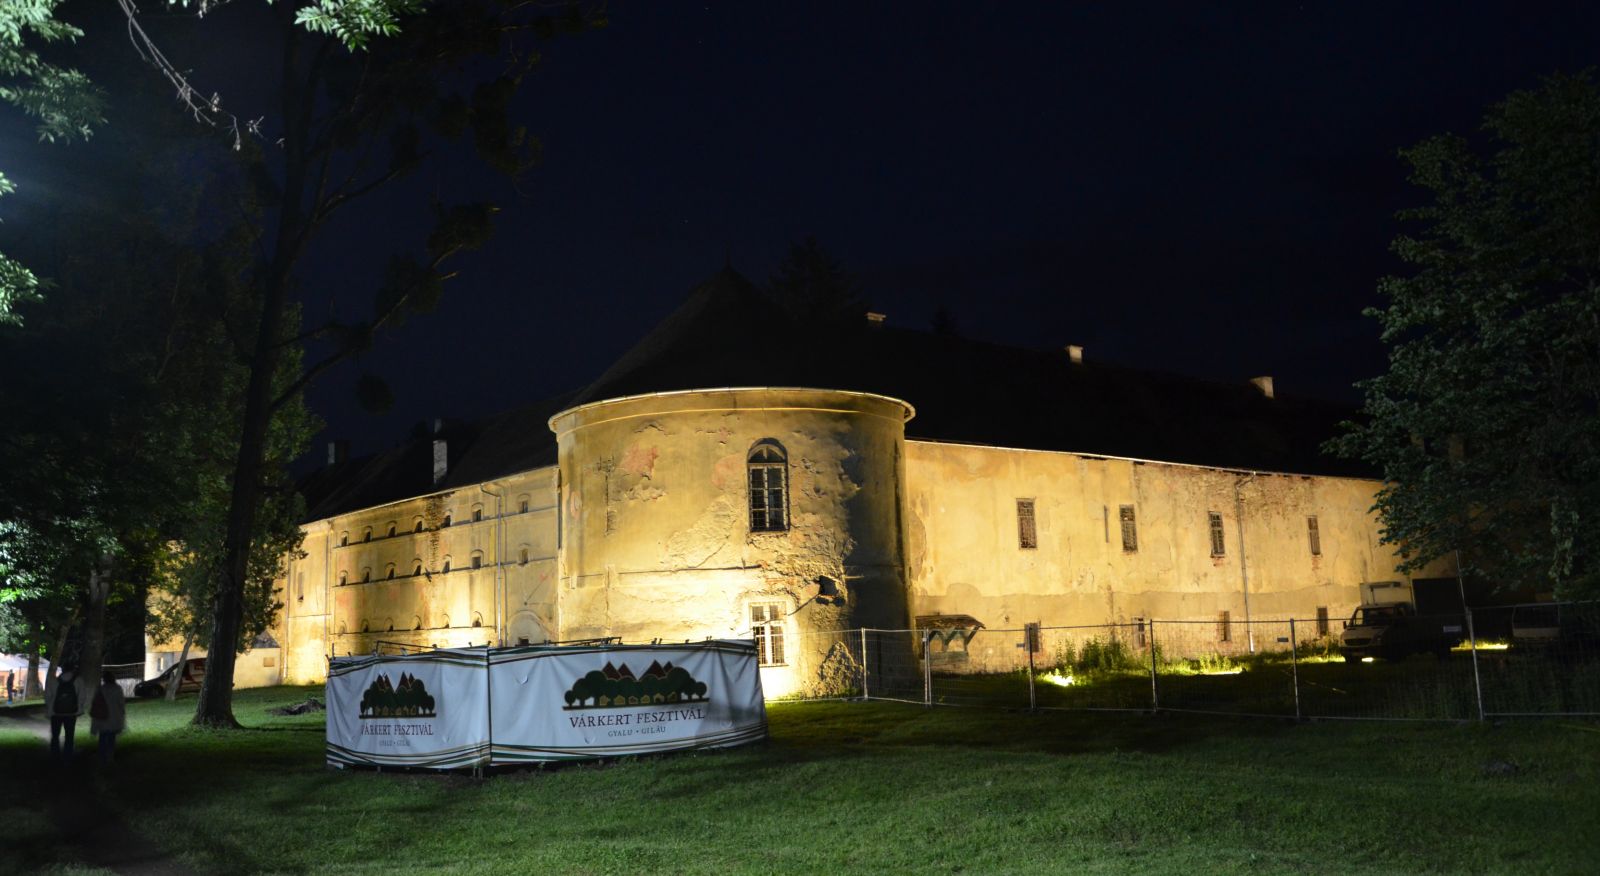 A vasárnap este véget ért Várkert Fesztivál helyszíne a Kolozsvártól 16 kilométerre fekvő, 15. században épült gyalui várkastély kertje volt. A kastélyt és a birtokot Nagy Elek kolozsvári származású magyarországi üzletember 2014-ben vásárolta meg egy Bánffy-örököstől, és az általa létrehozott Traditio Transylvanica Alapítványnak adományozta. Ahogy a megnyitón is elhangzott, a fesztivál megszervezése is elsősorban az üzletembernek köszönhető, aki történelmi-kulturális kalandparkká kívánja alakítani a létesítményt.